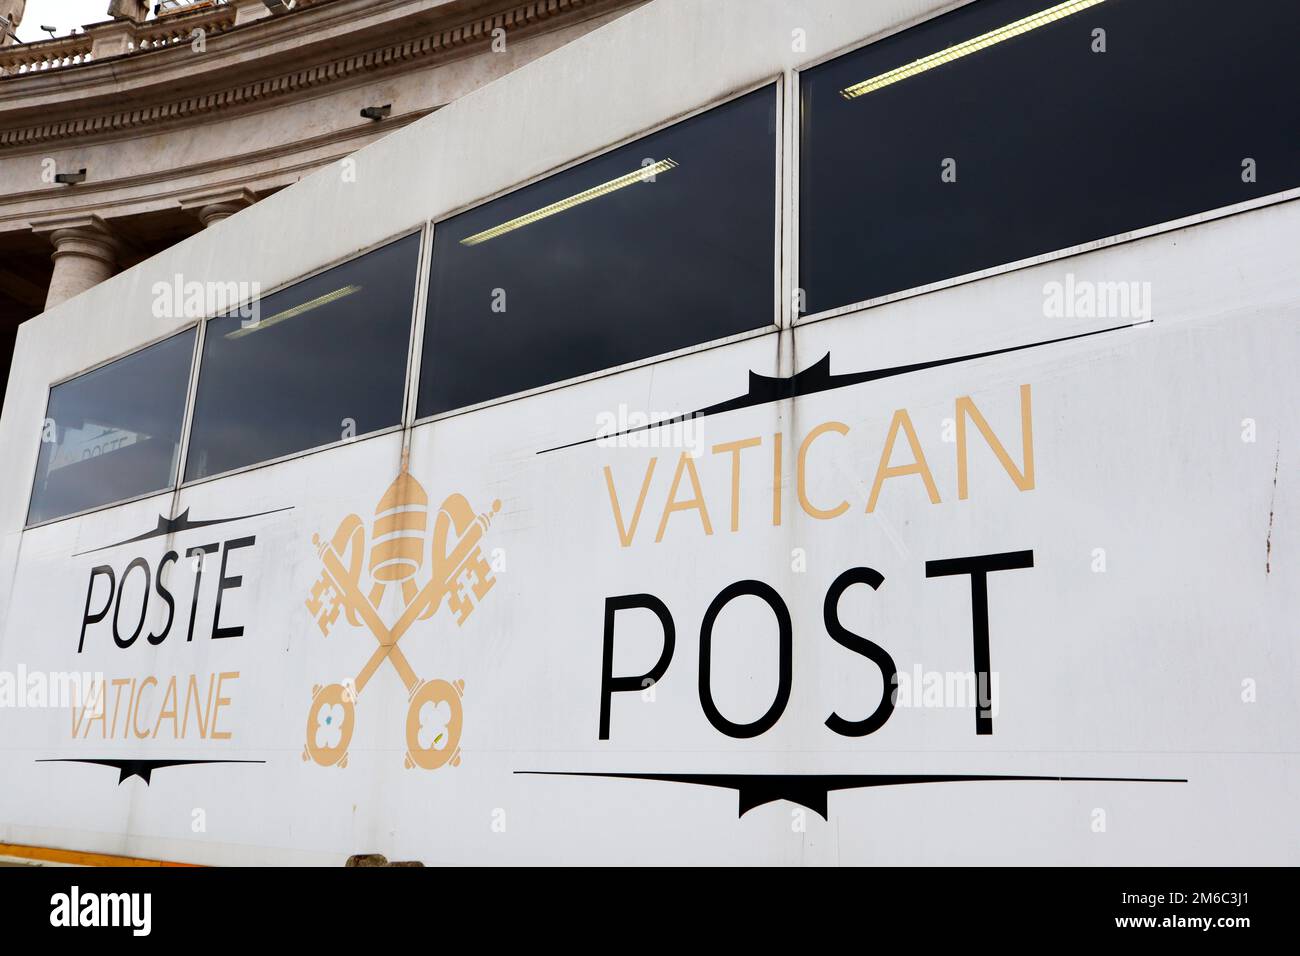 Vatikanstadt, Heiliger Stuhl – Vatikanische Post am Petersplatz Stockfoto